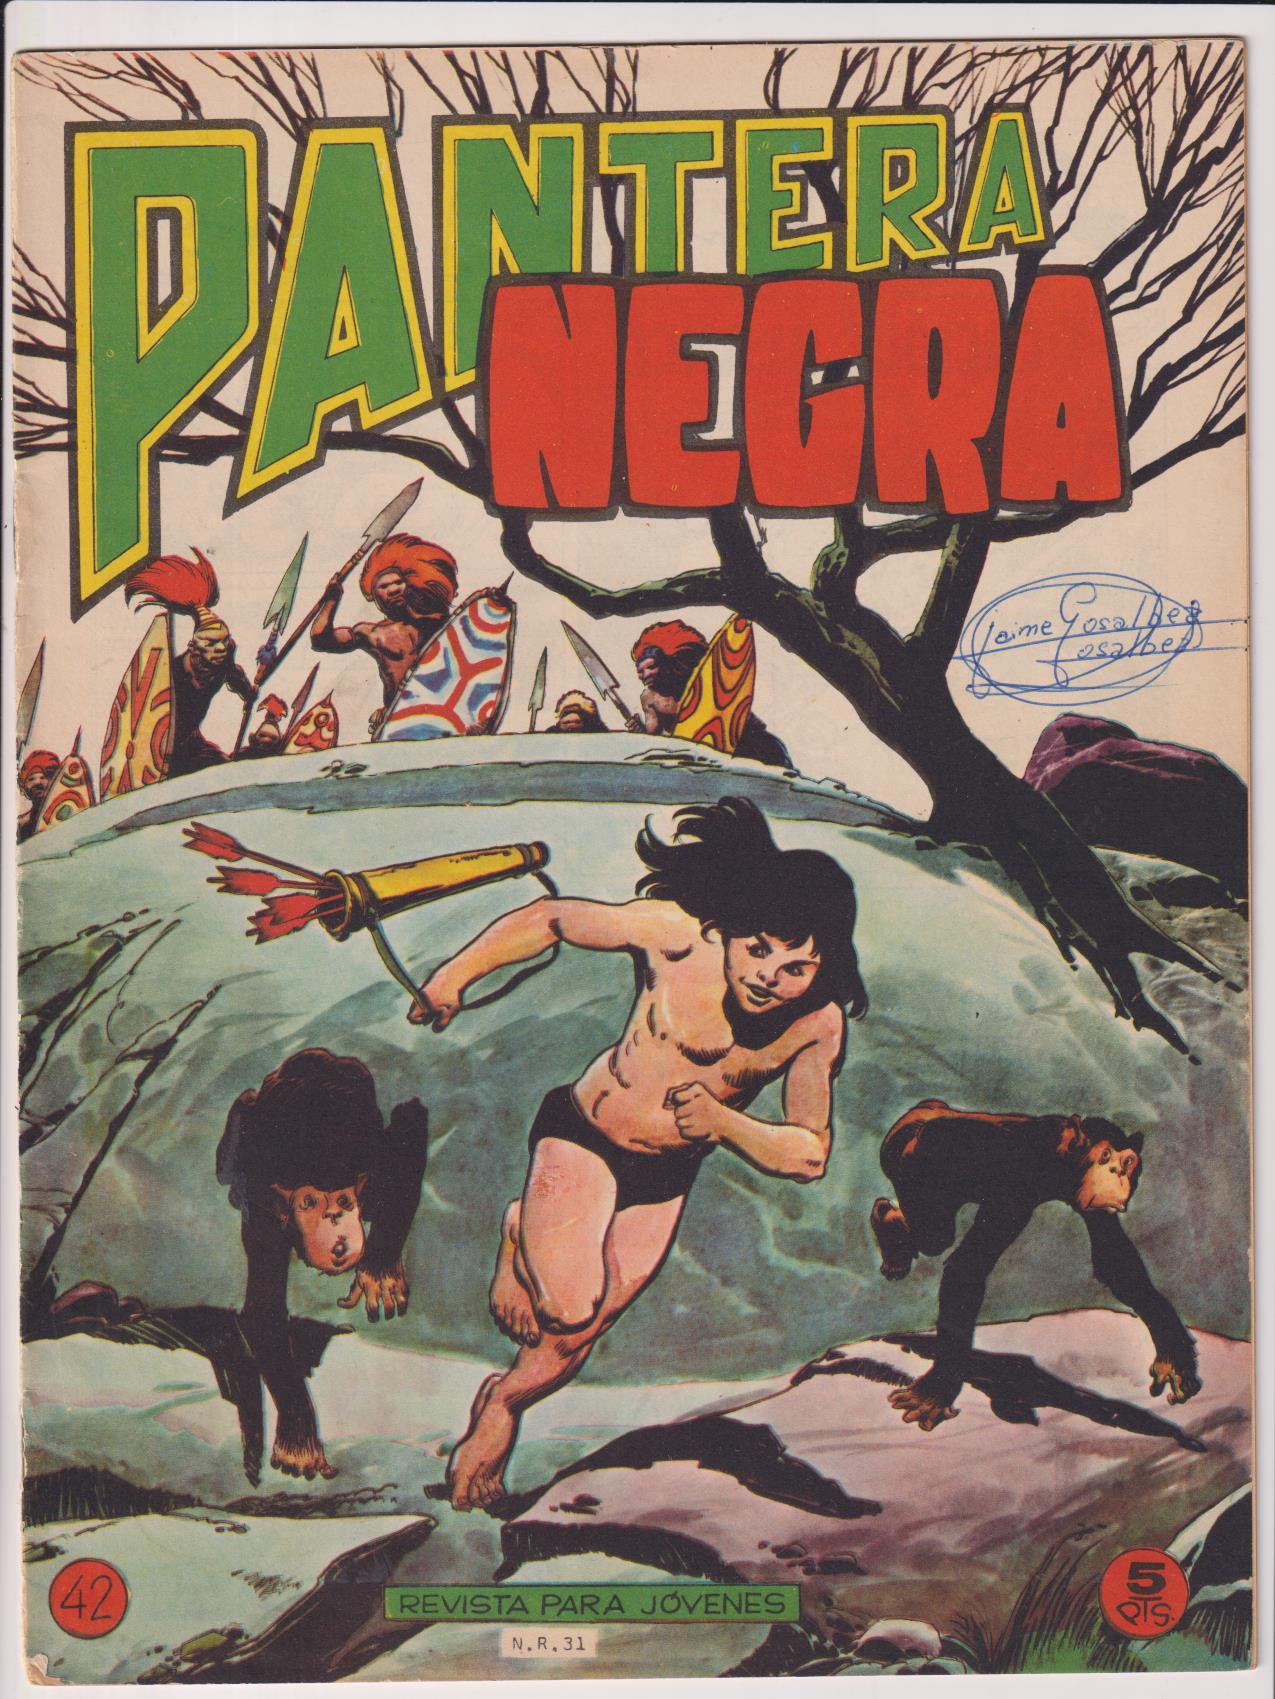 Pantera Negra Revista nº 42. Maga 1964